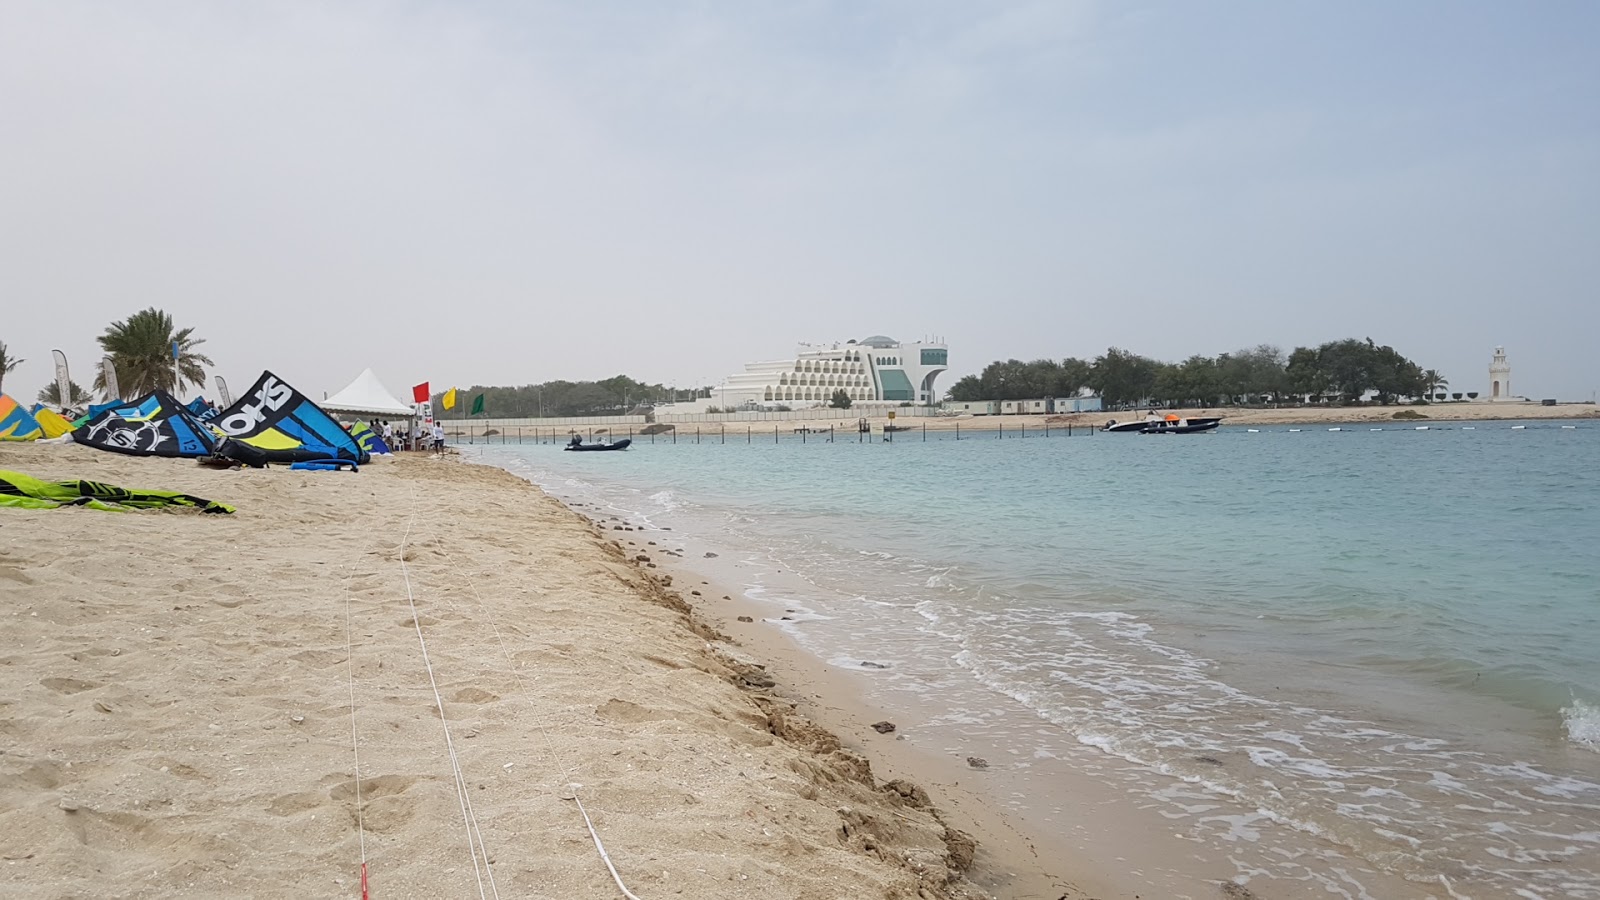 Al Mirfa Beach'in fotoğrafı geniş plaj ile birlikte